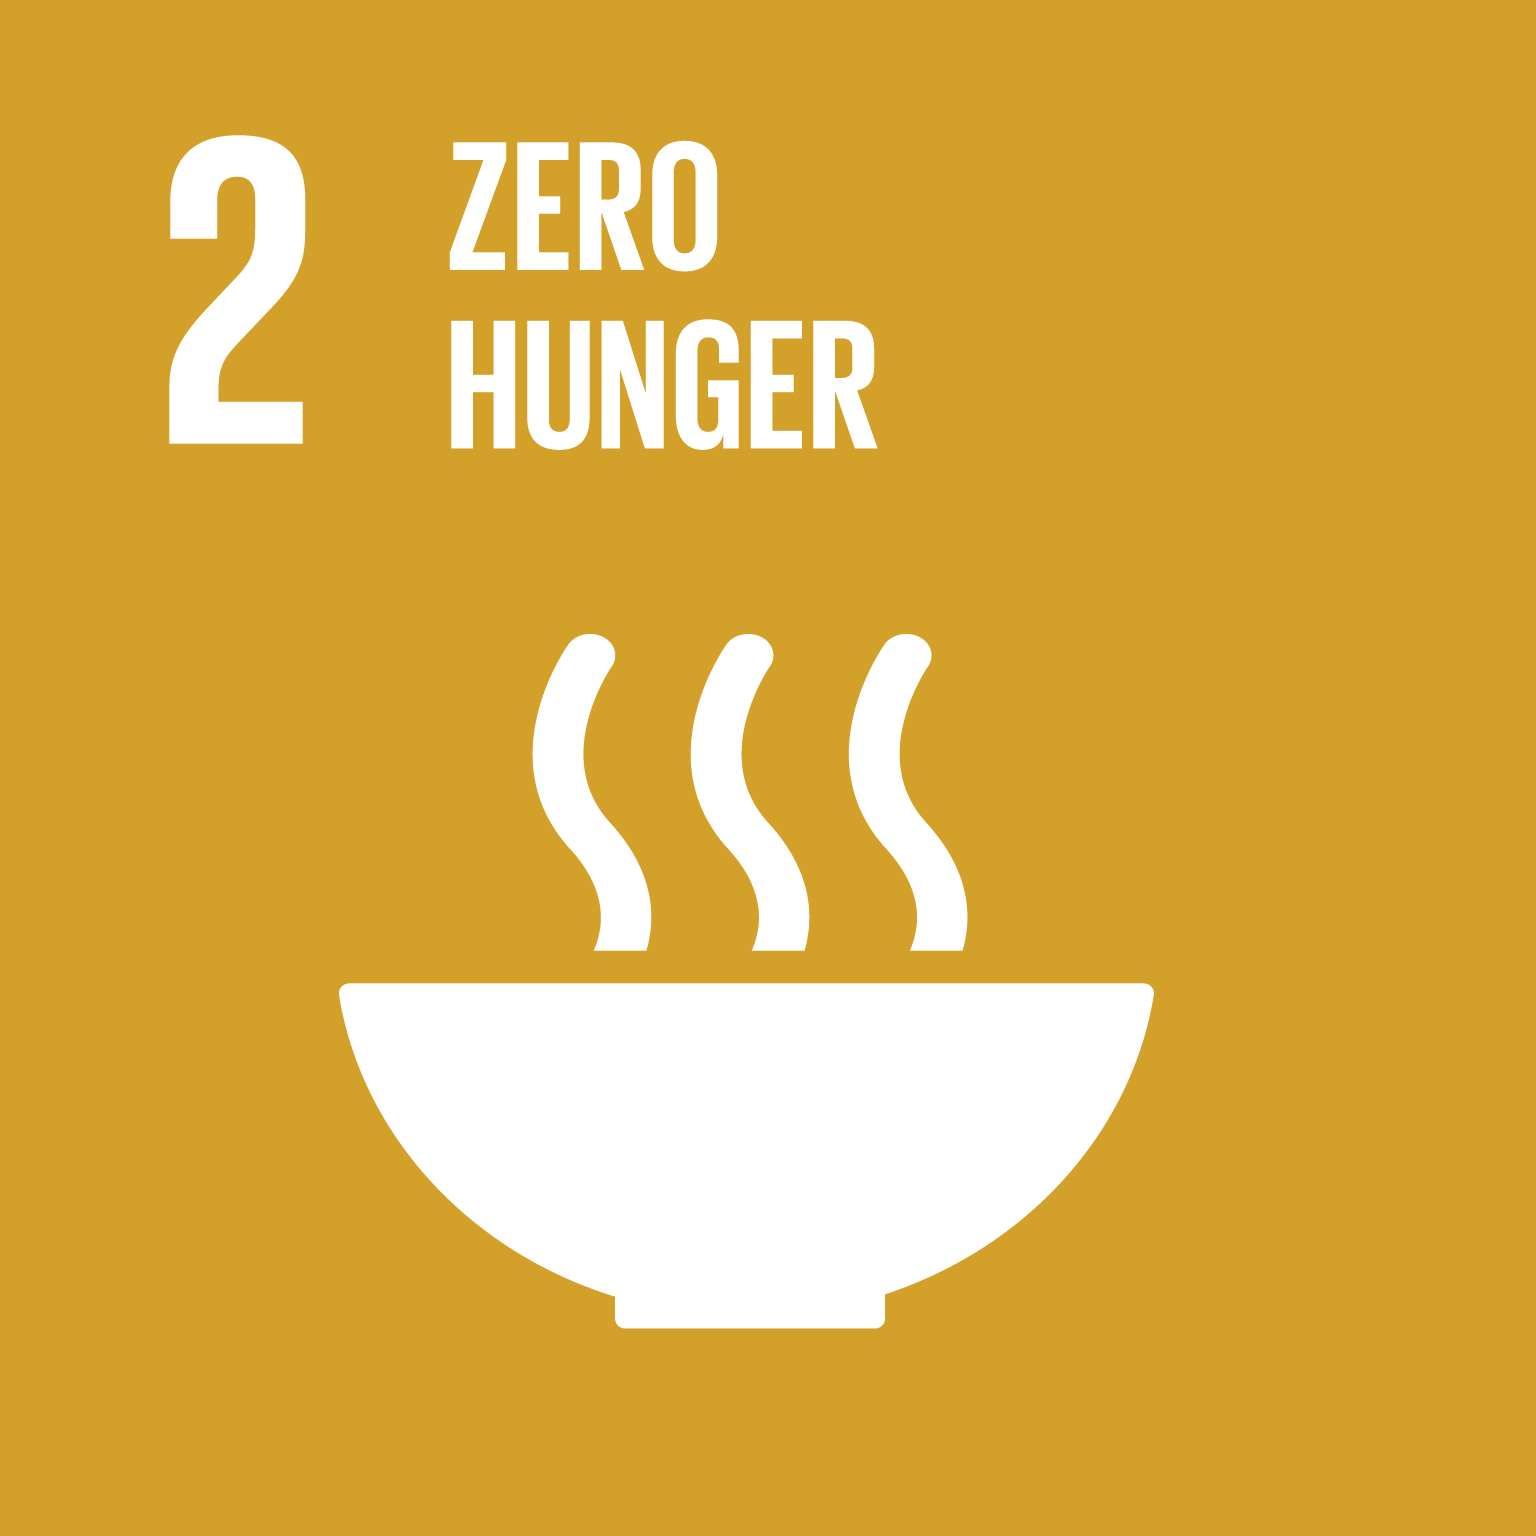 Goal 2 - zero hunger